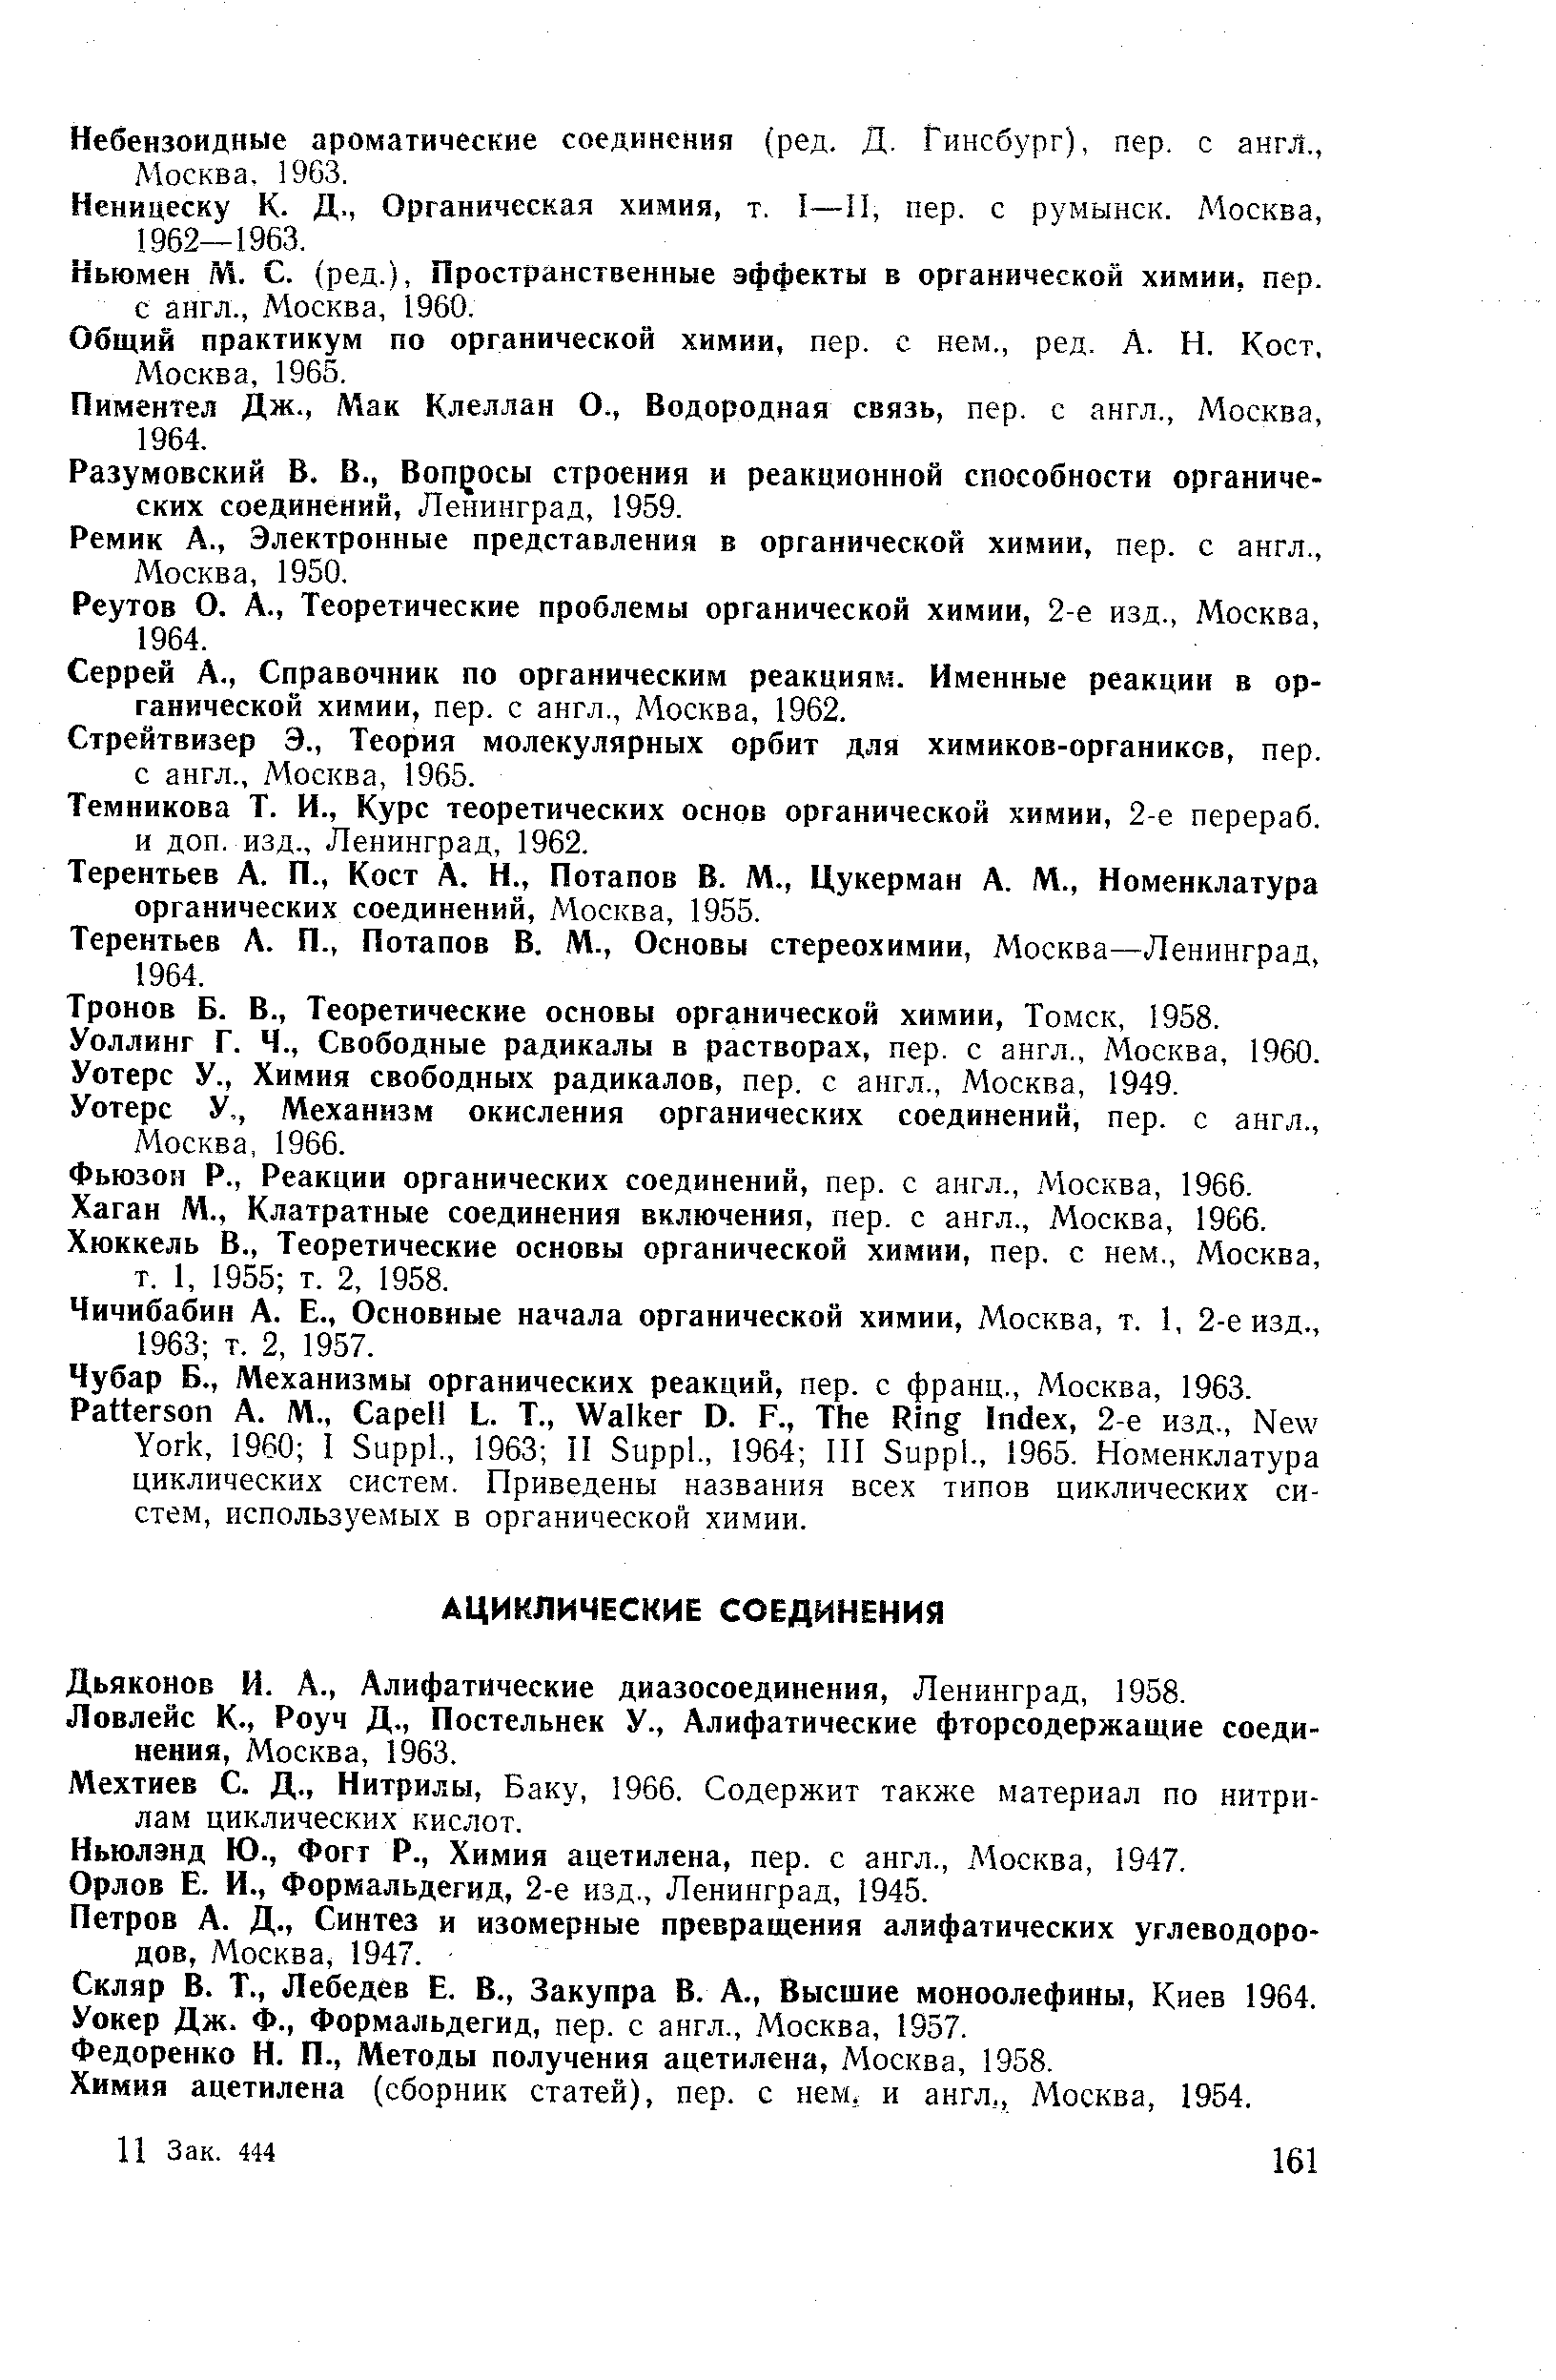 Дьяконов И. Д., Алифатические диазосоединения, Ленинград, 1958.